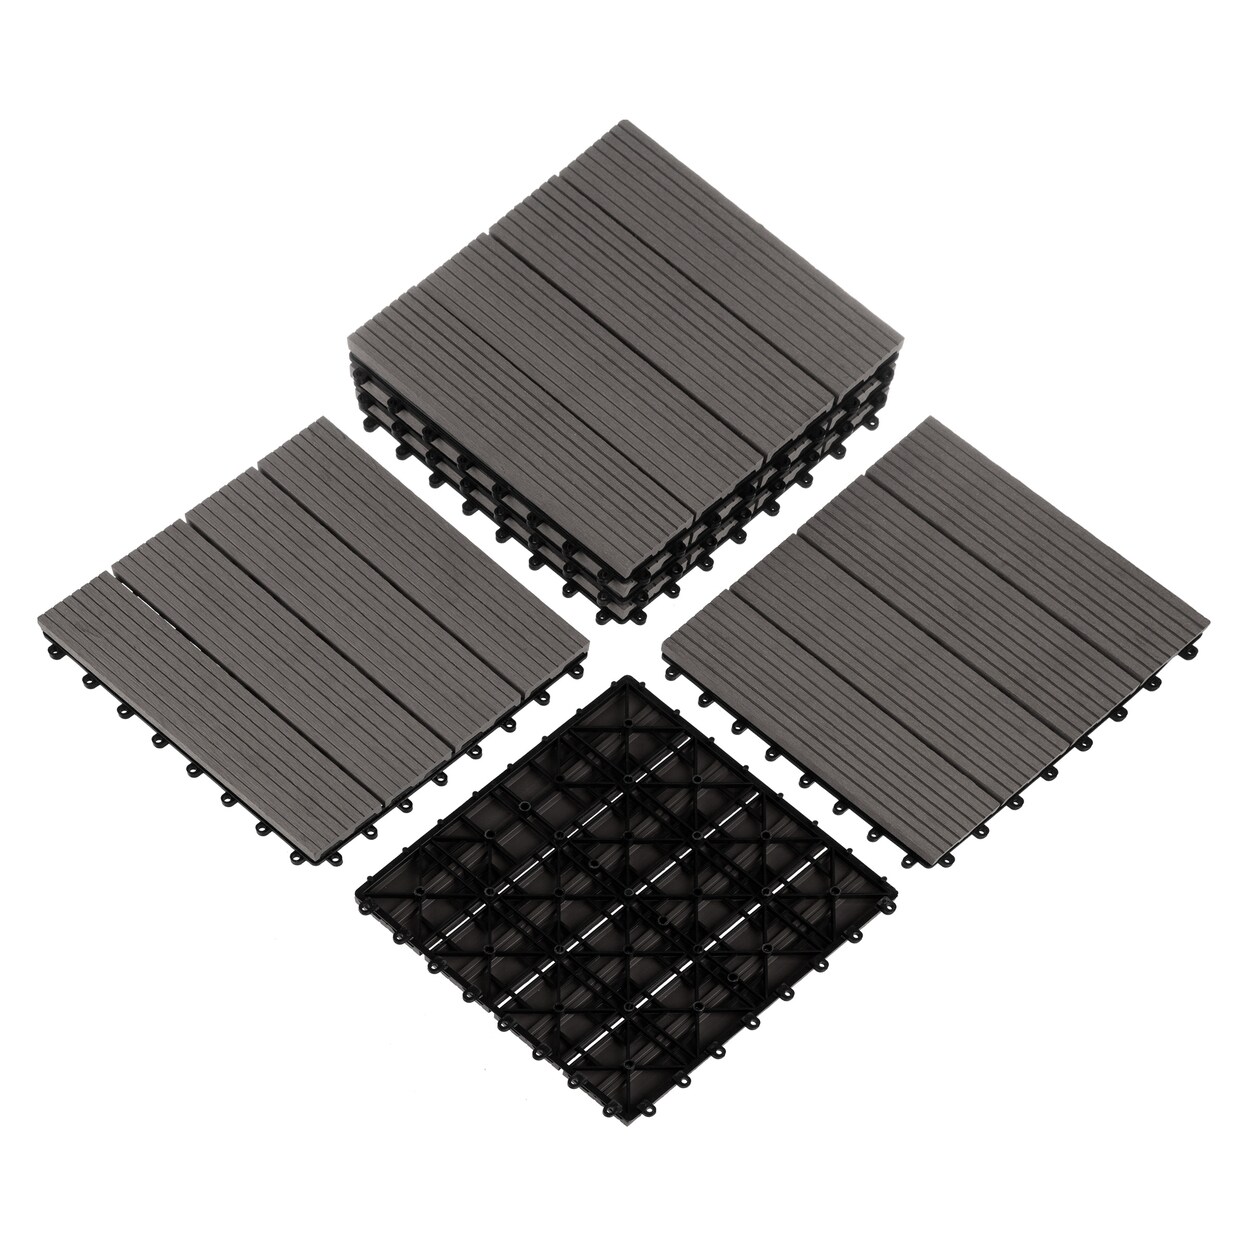 Pure Garden 6 Sets Patio Floor Tiles Wood/Plastic Composite Interlocking Deck Tiles Gray